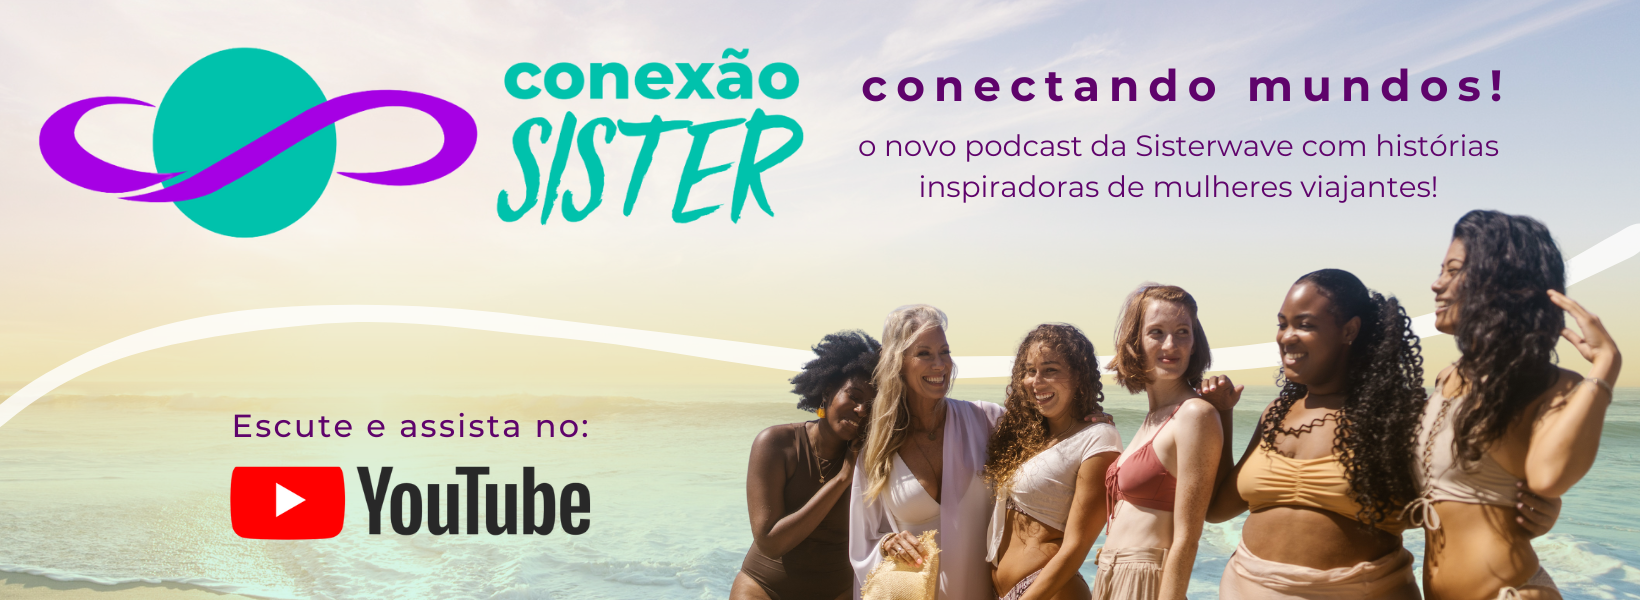 Assista e escute o podcast Conexão Sister